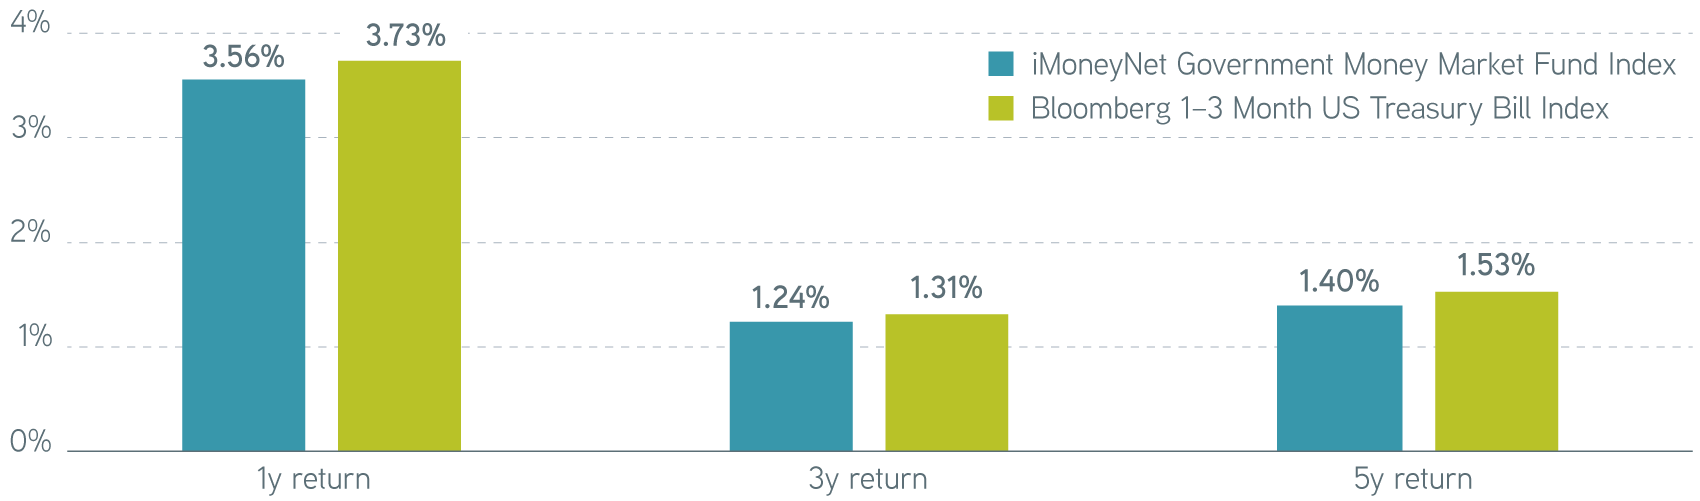 Moneymarket fund index vs Treasury index returns graph